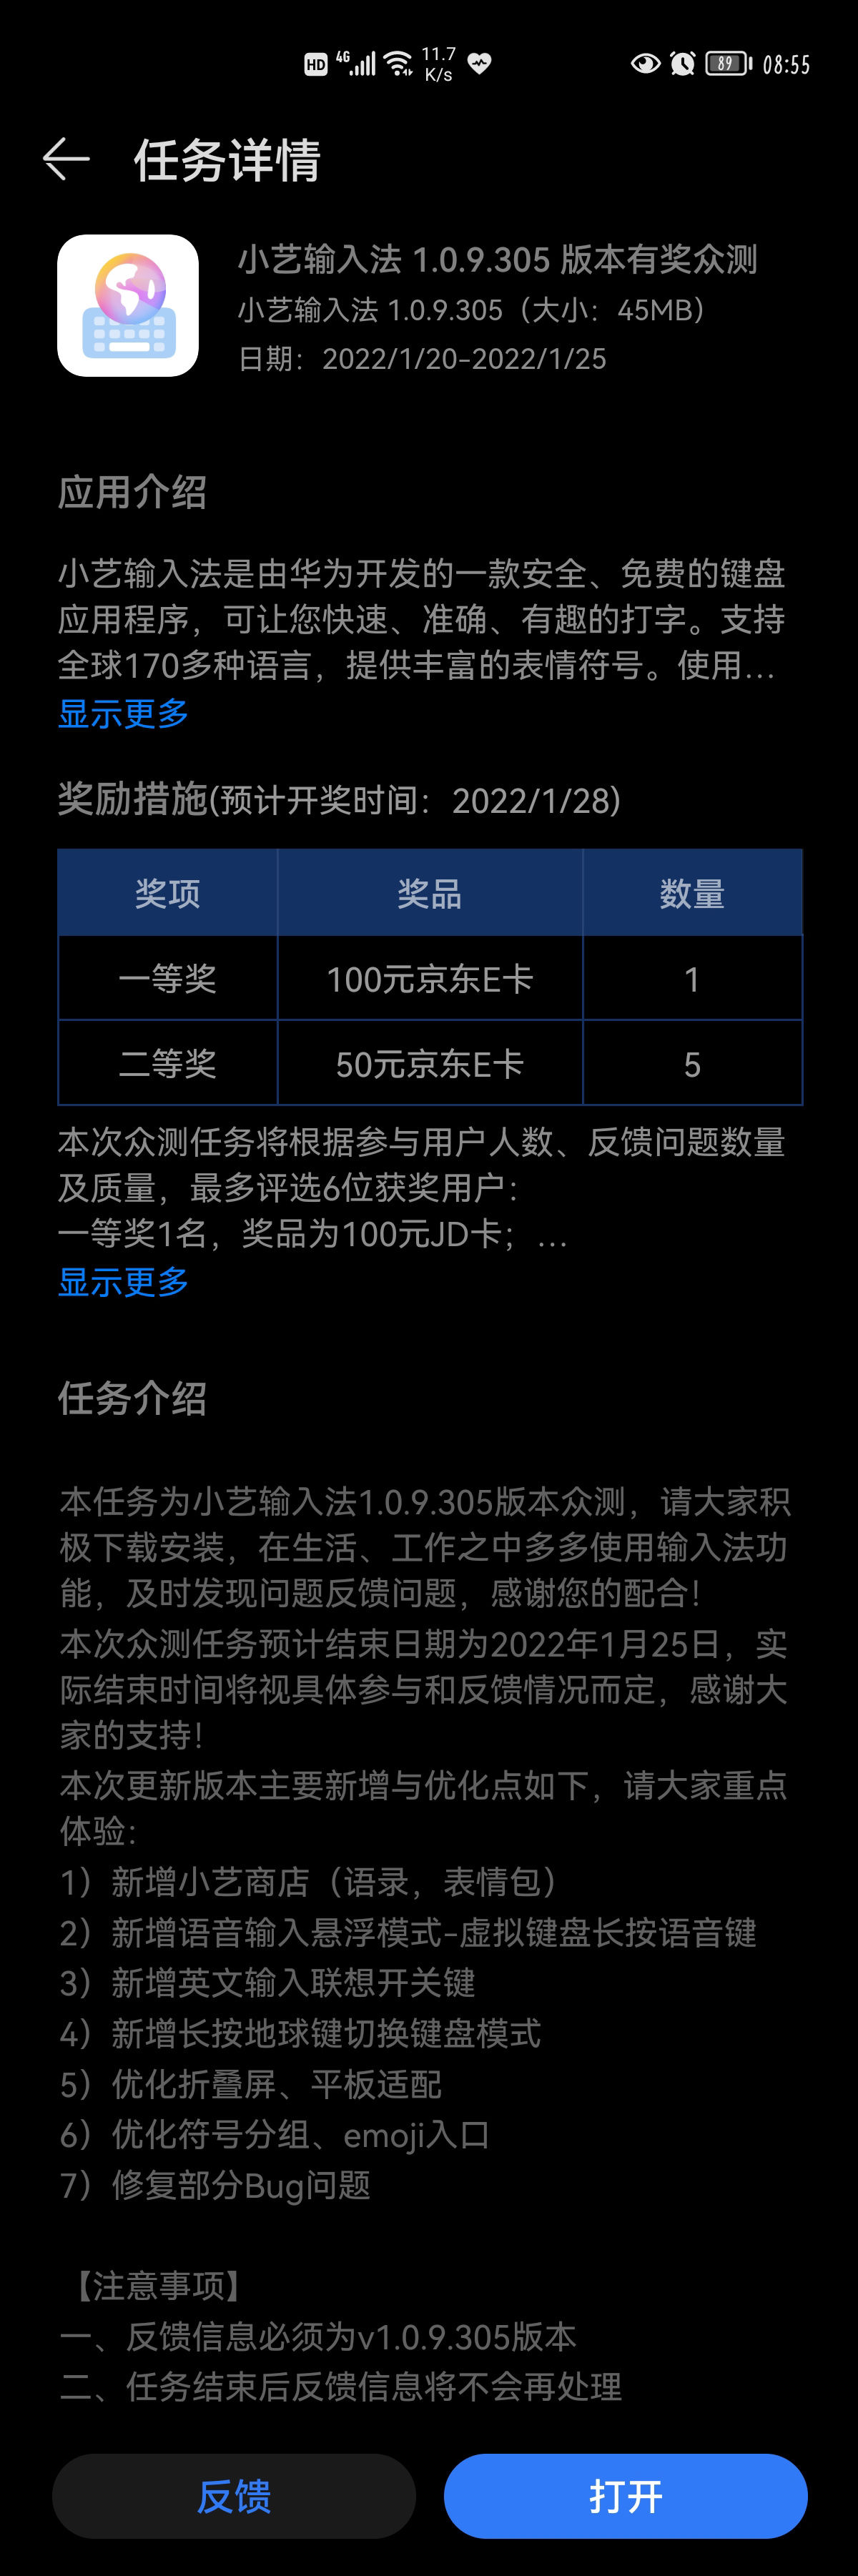 华为|华为鸿蒙手机小艺输入法1.0.9.305测试版发布